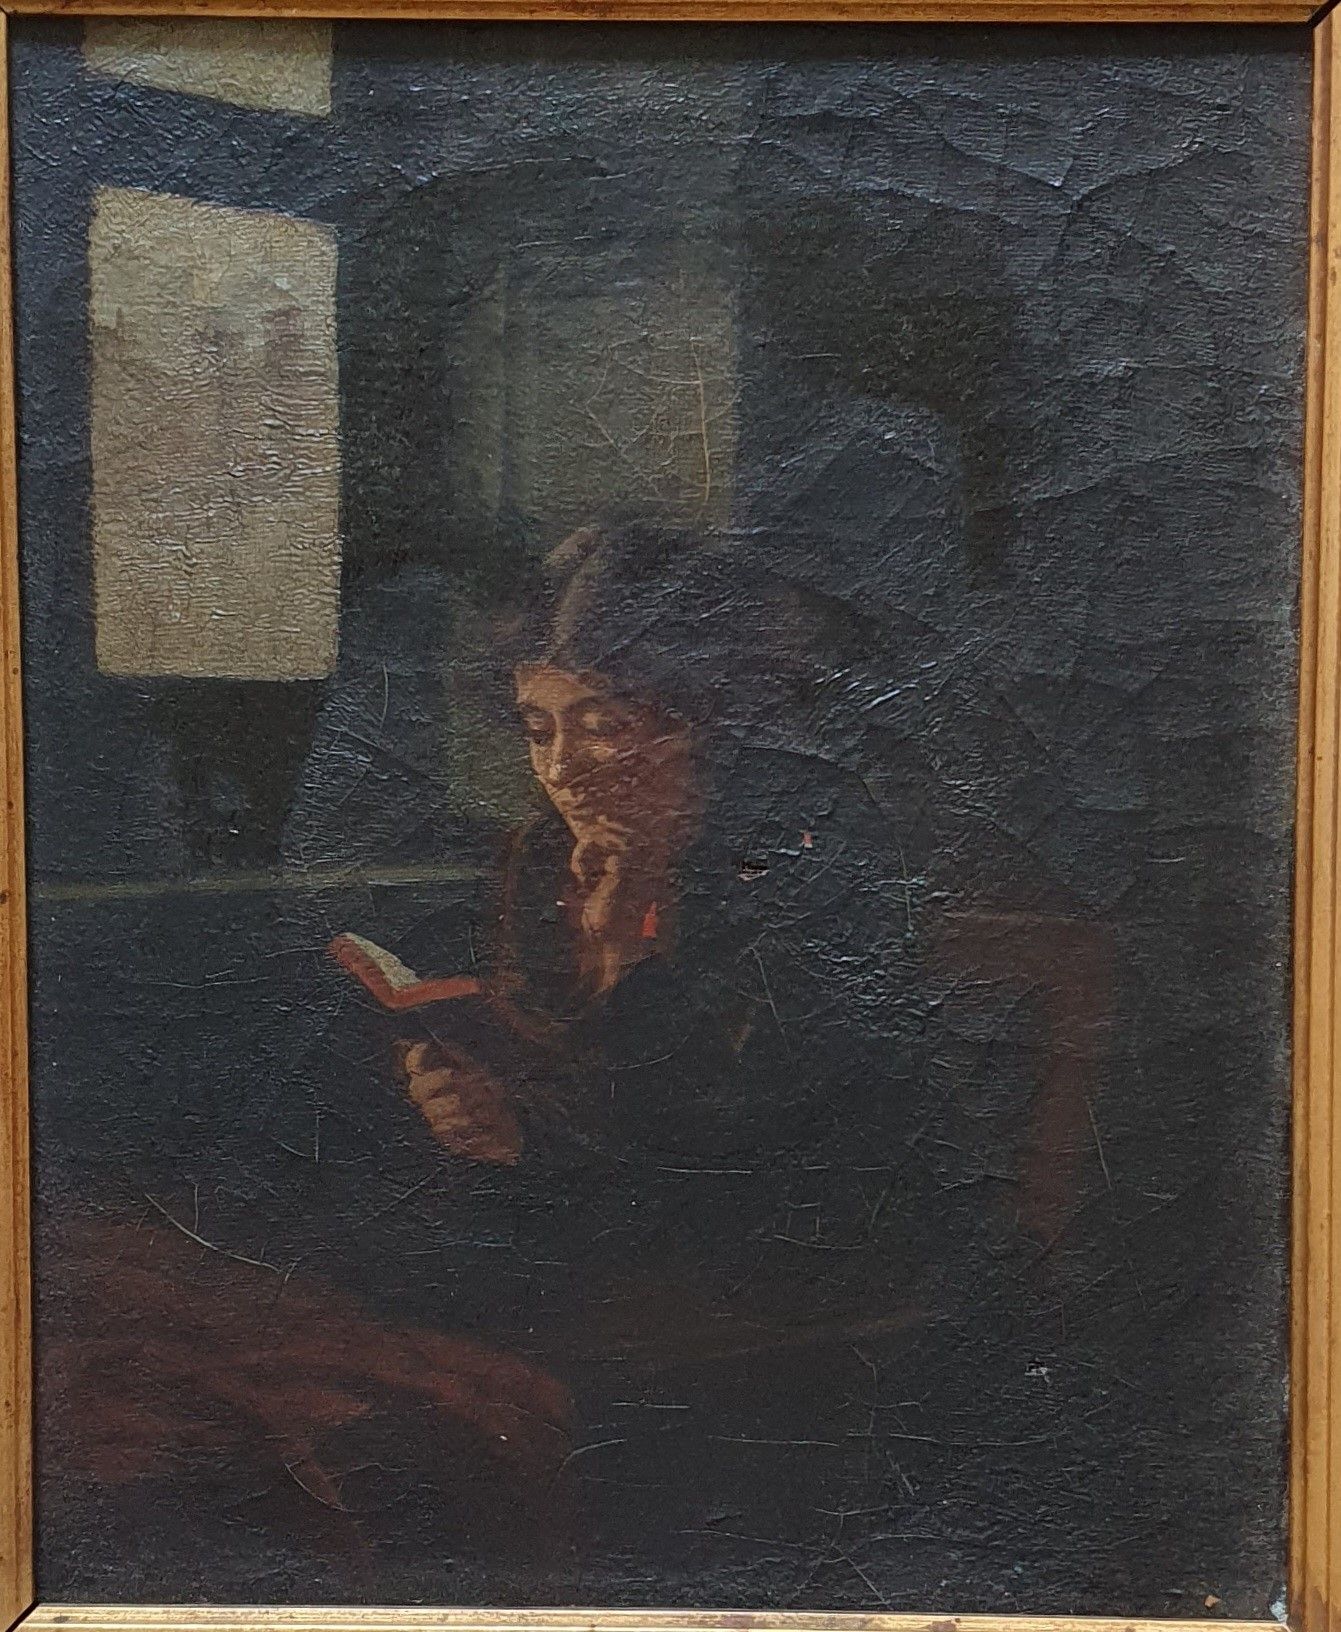 ECOLE FRANCAISE du XIXe siècle Scuola francese del 19° secolo

Donna che legge

&hellip;